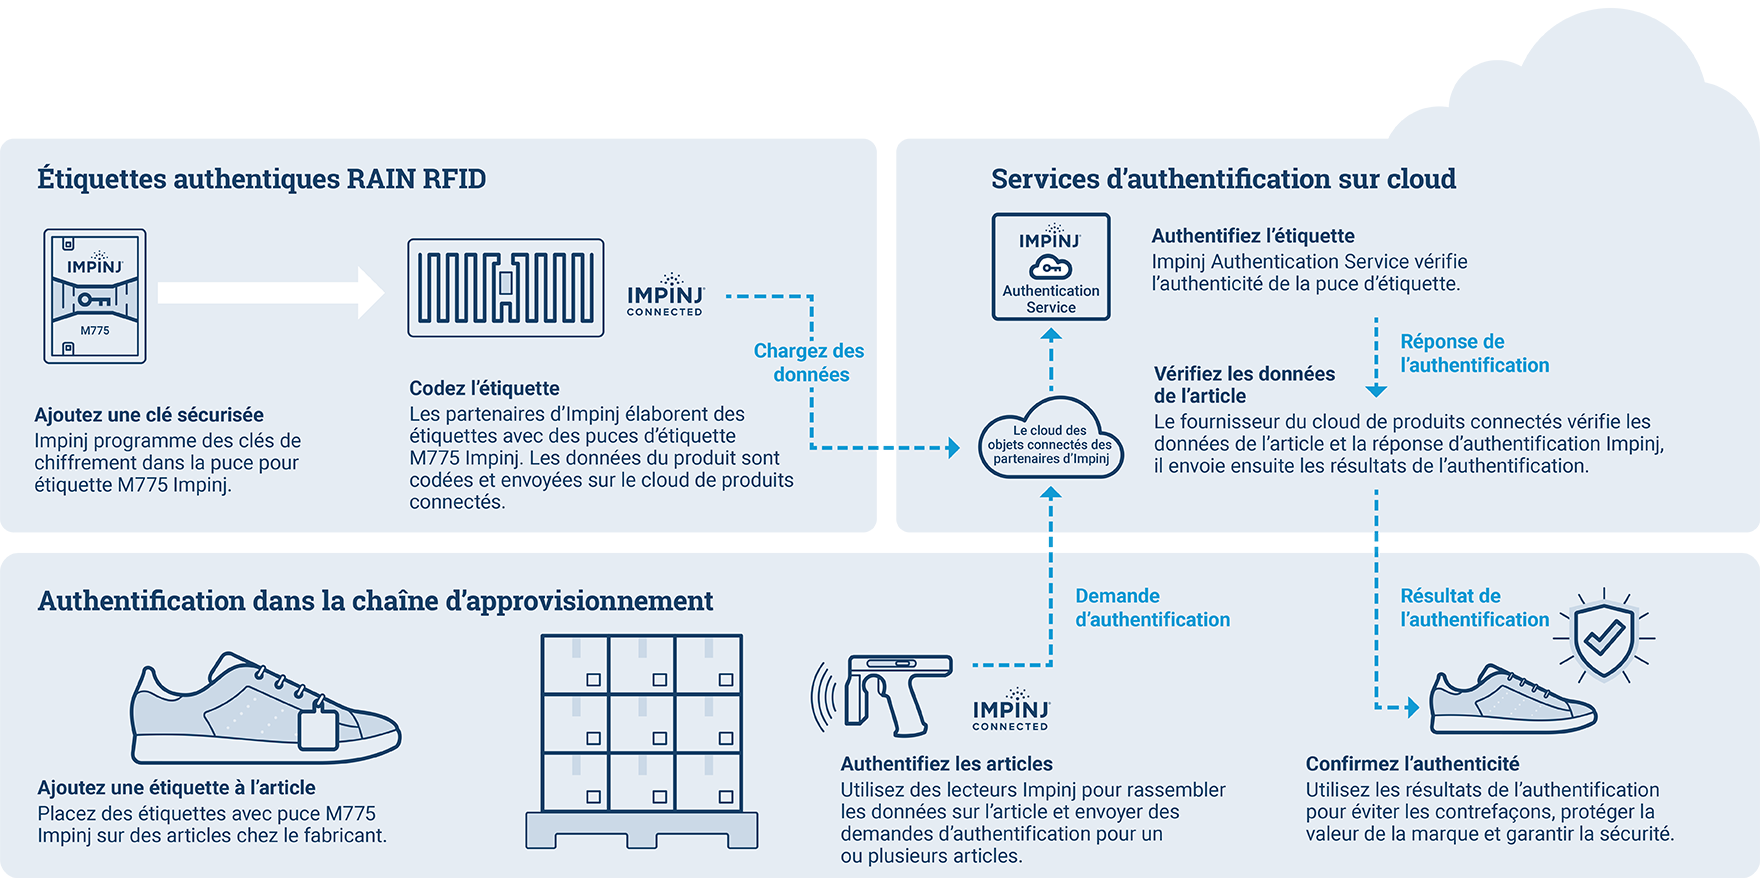 Schéma explicatif des services RAIN RFID et d'authentification cloud d'Impinj avec des étiquettes codées et vérification de l'authenticité des produits